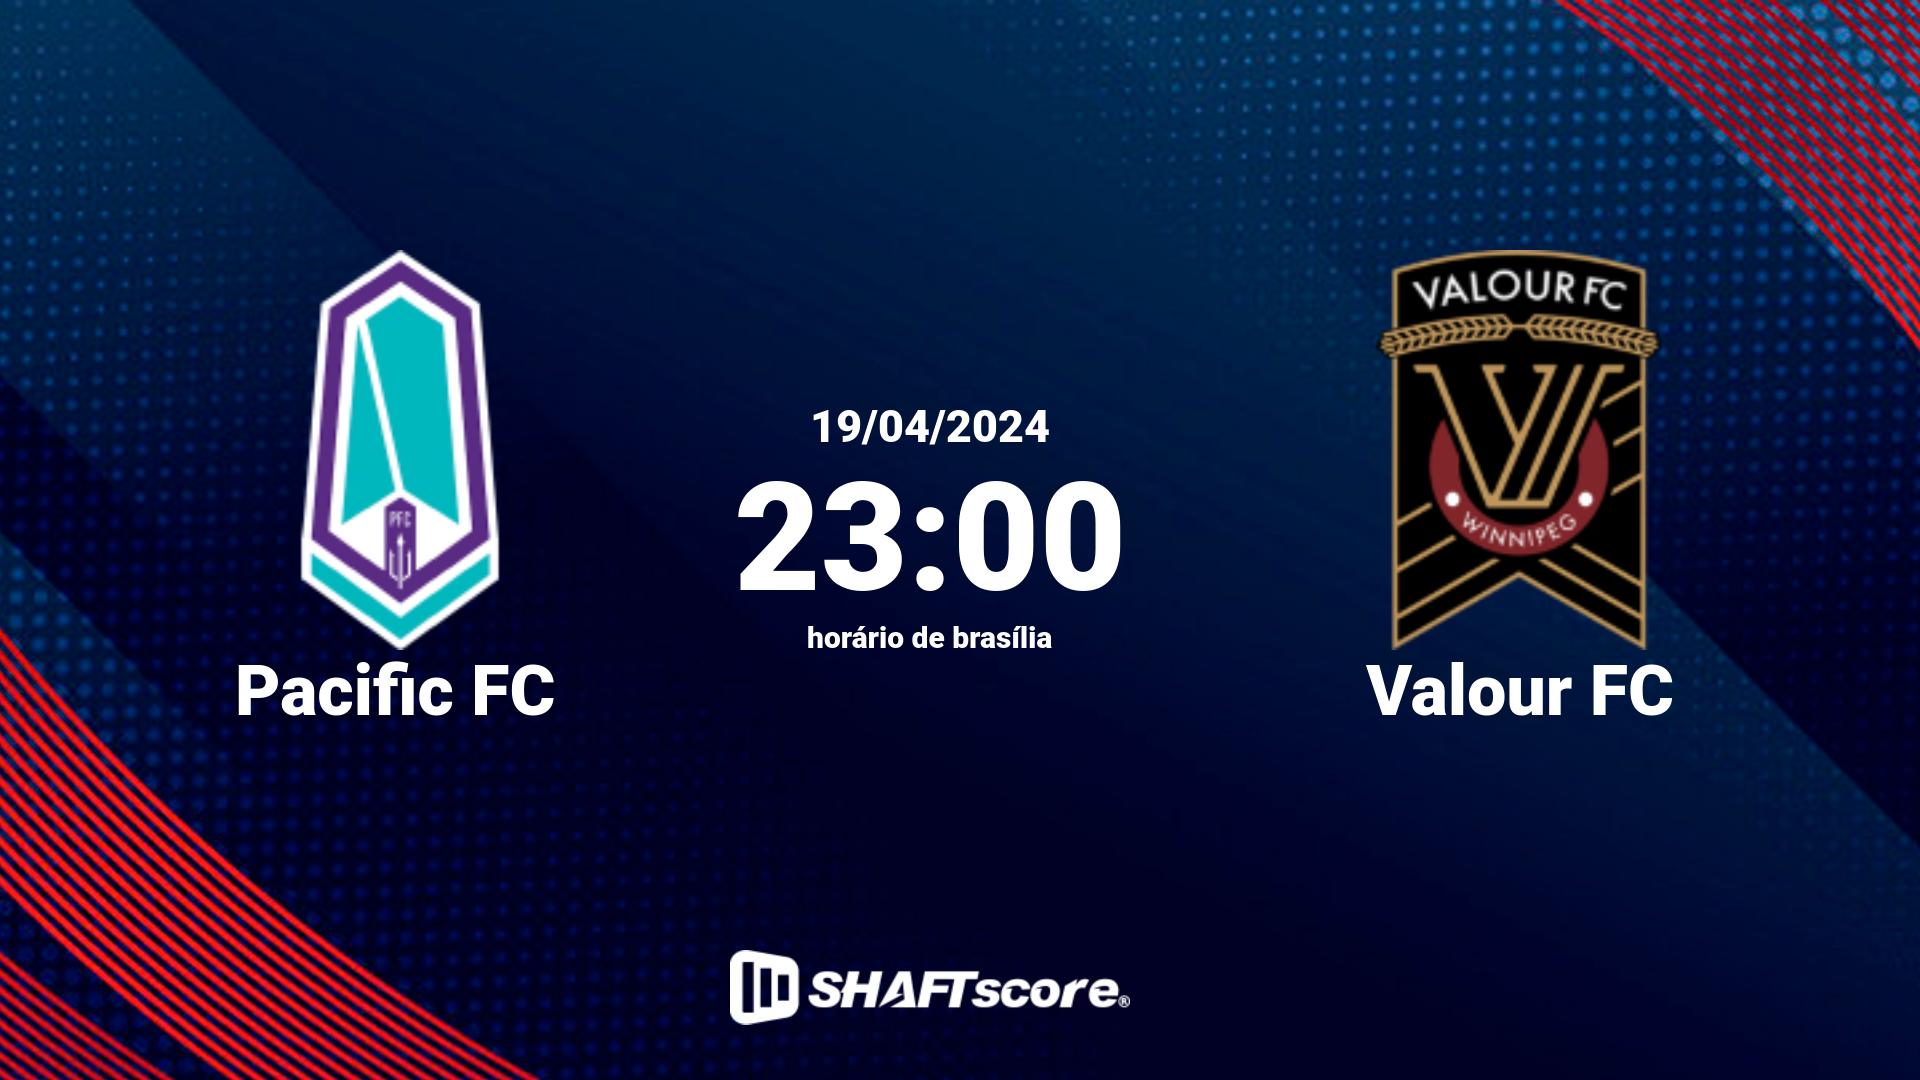 Estatísticas do jogo Pacific FC vs Valour FC 19.04 23:00